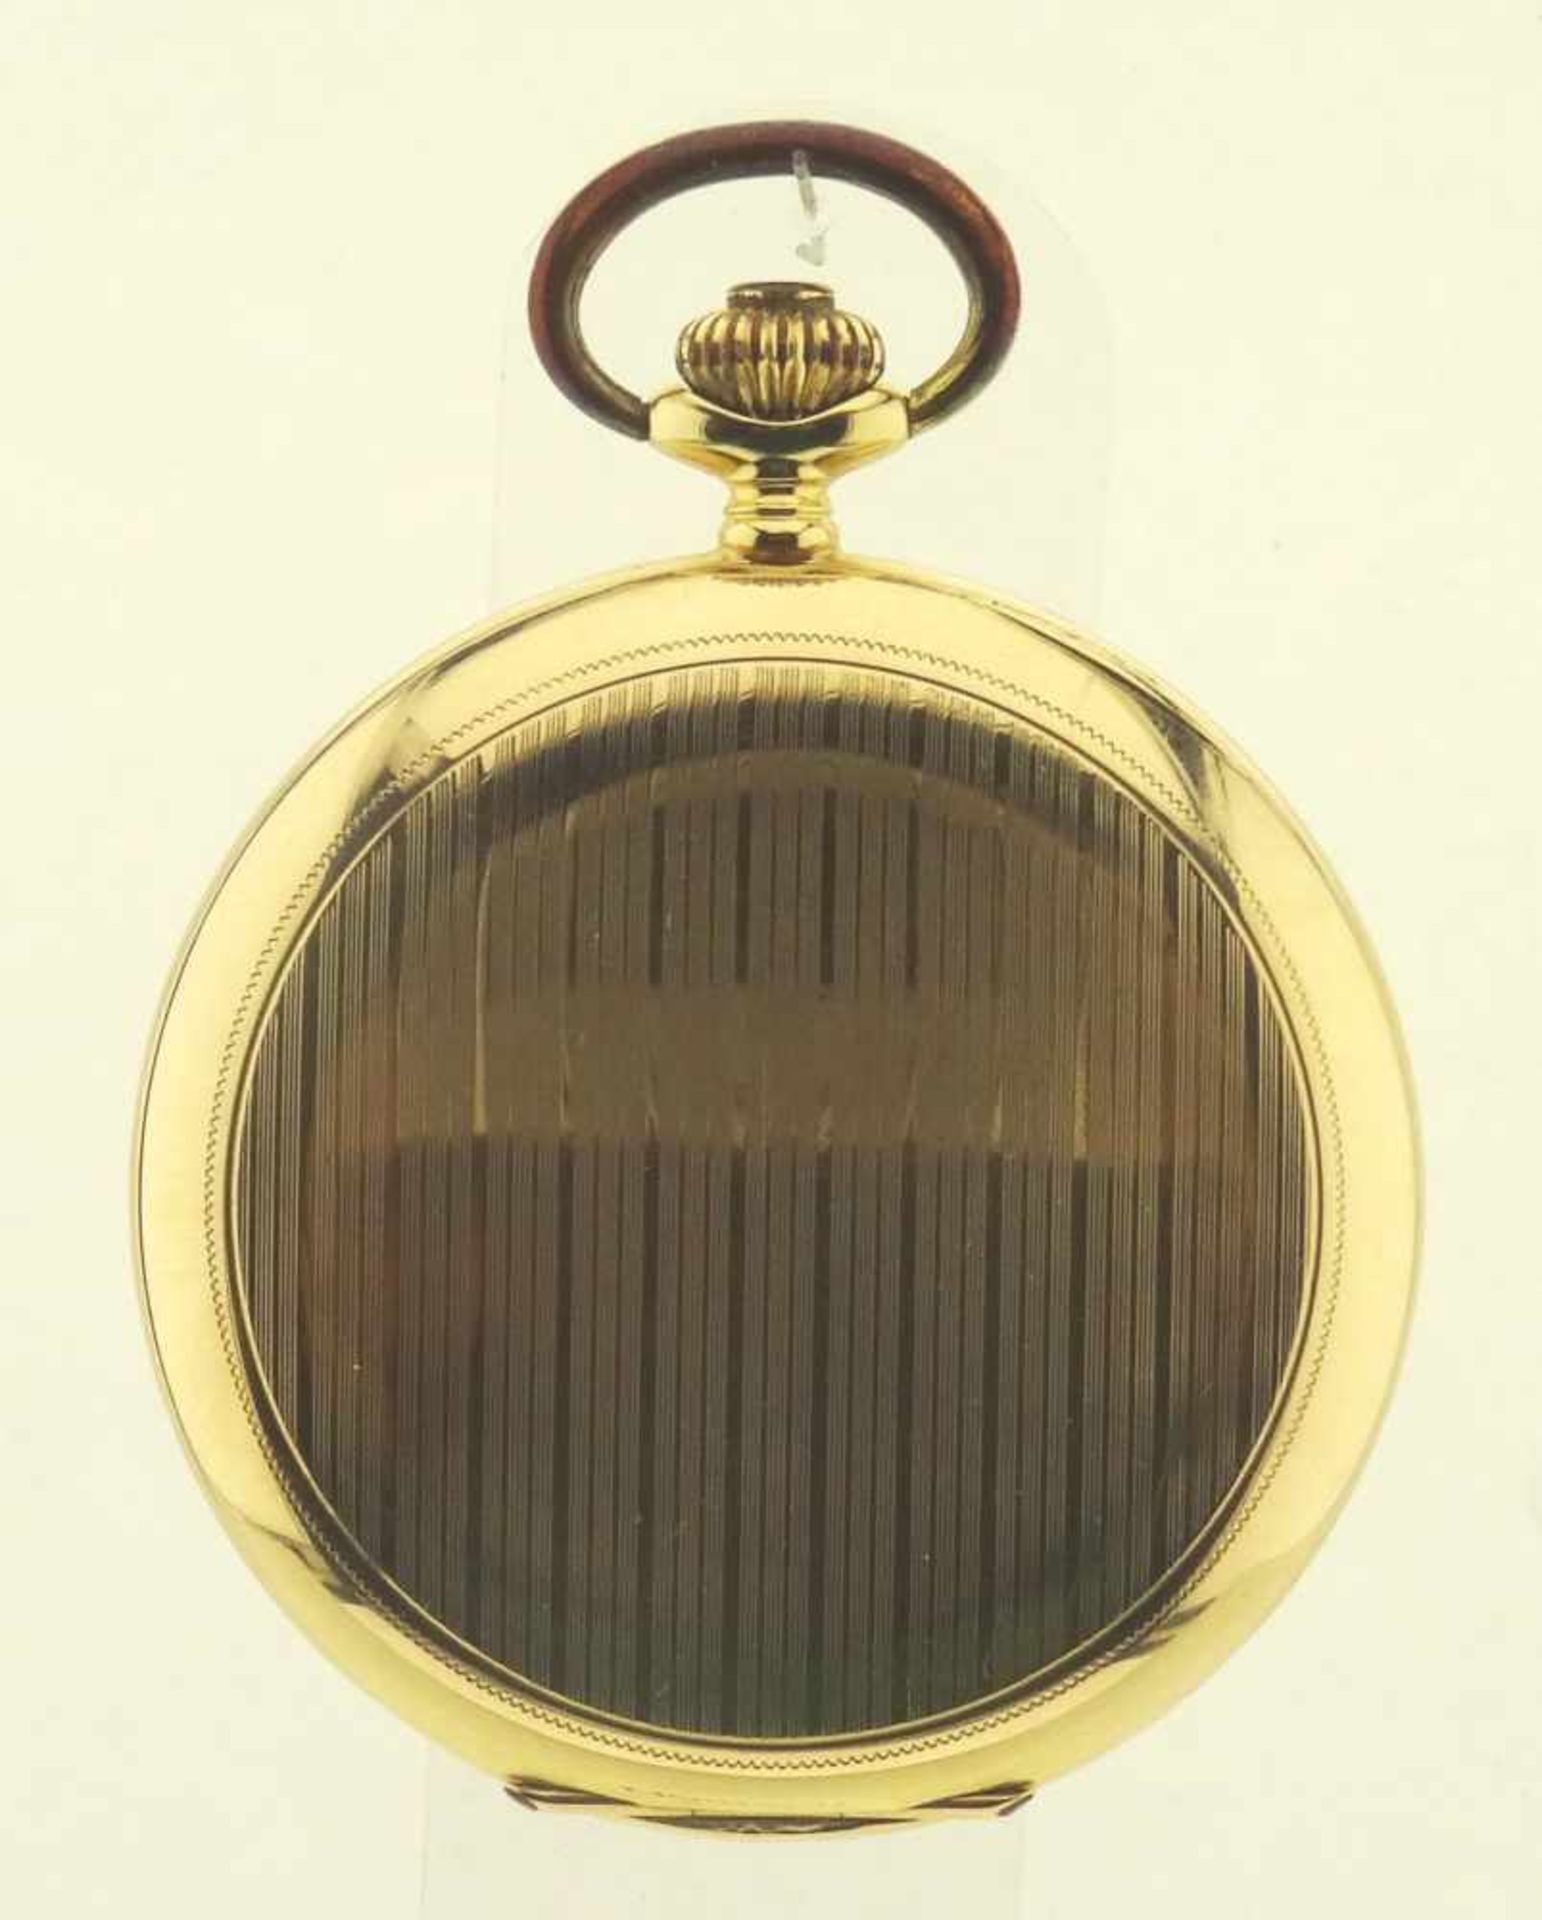 Sprungdeckeltaschenuhr Gold 585 mit 3 Deckeln in Gold 585, Uhrwerk mit Ankerhemmung läuft gut, - Bild 6 aus 6